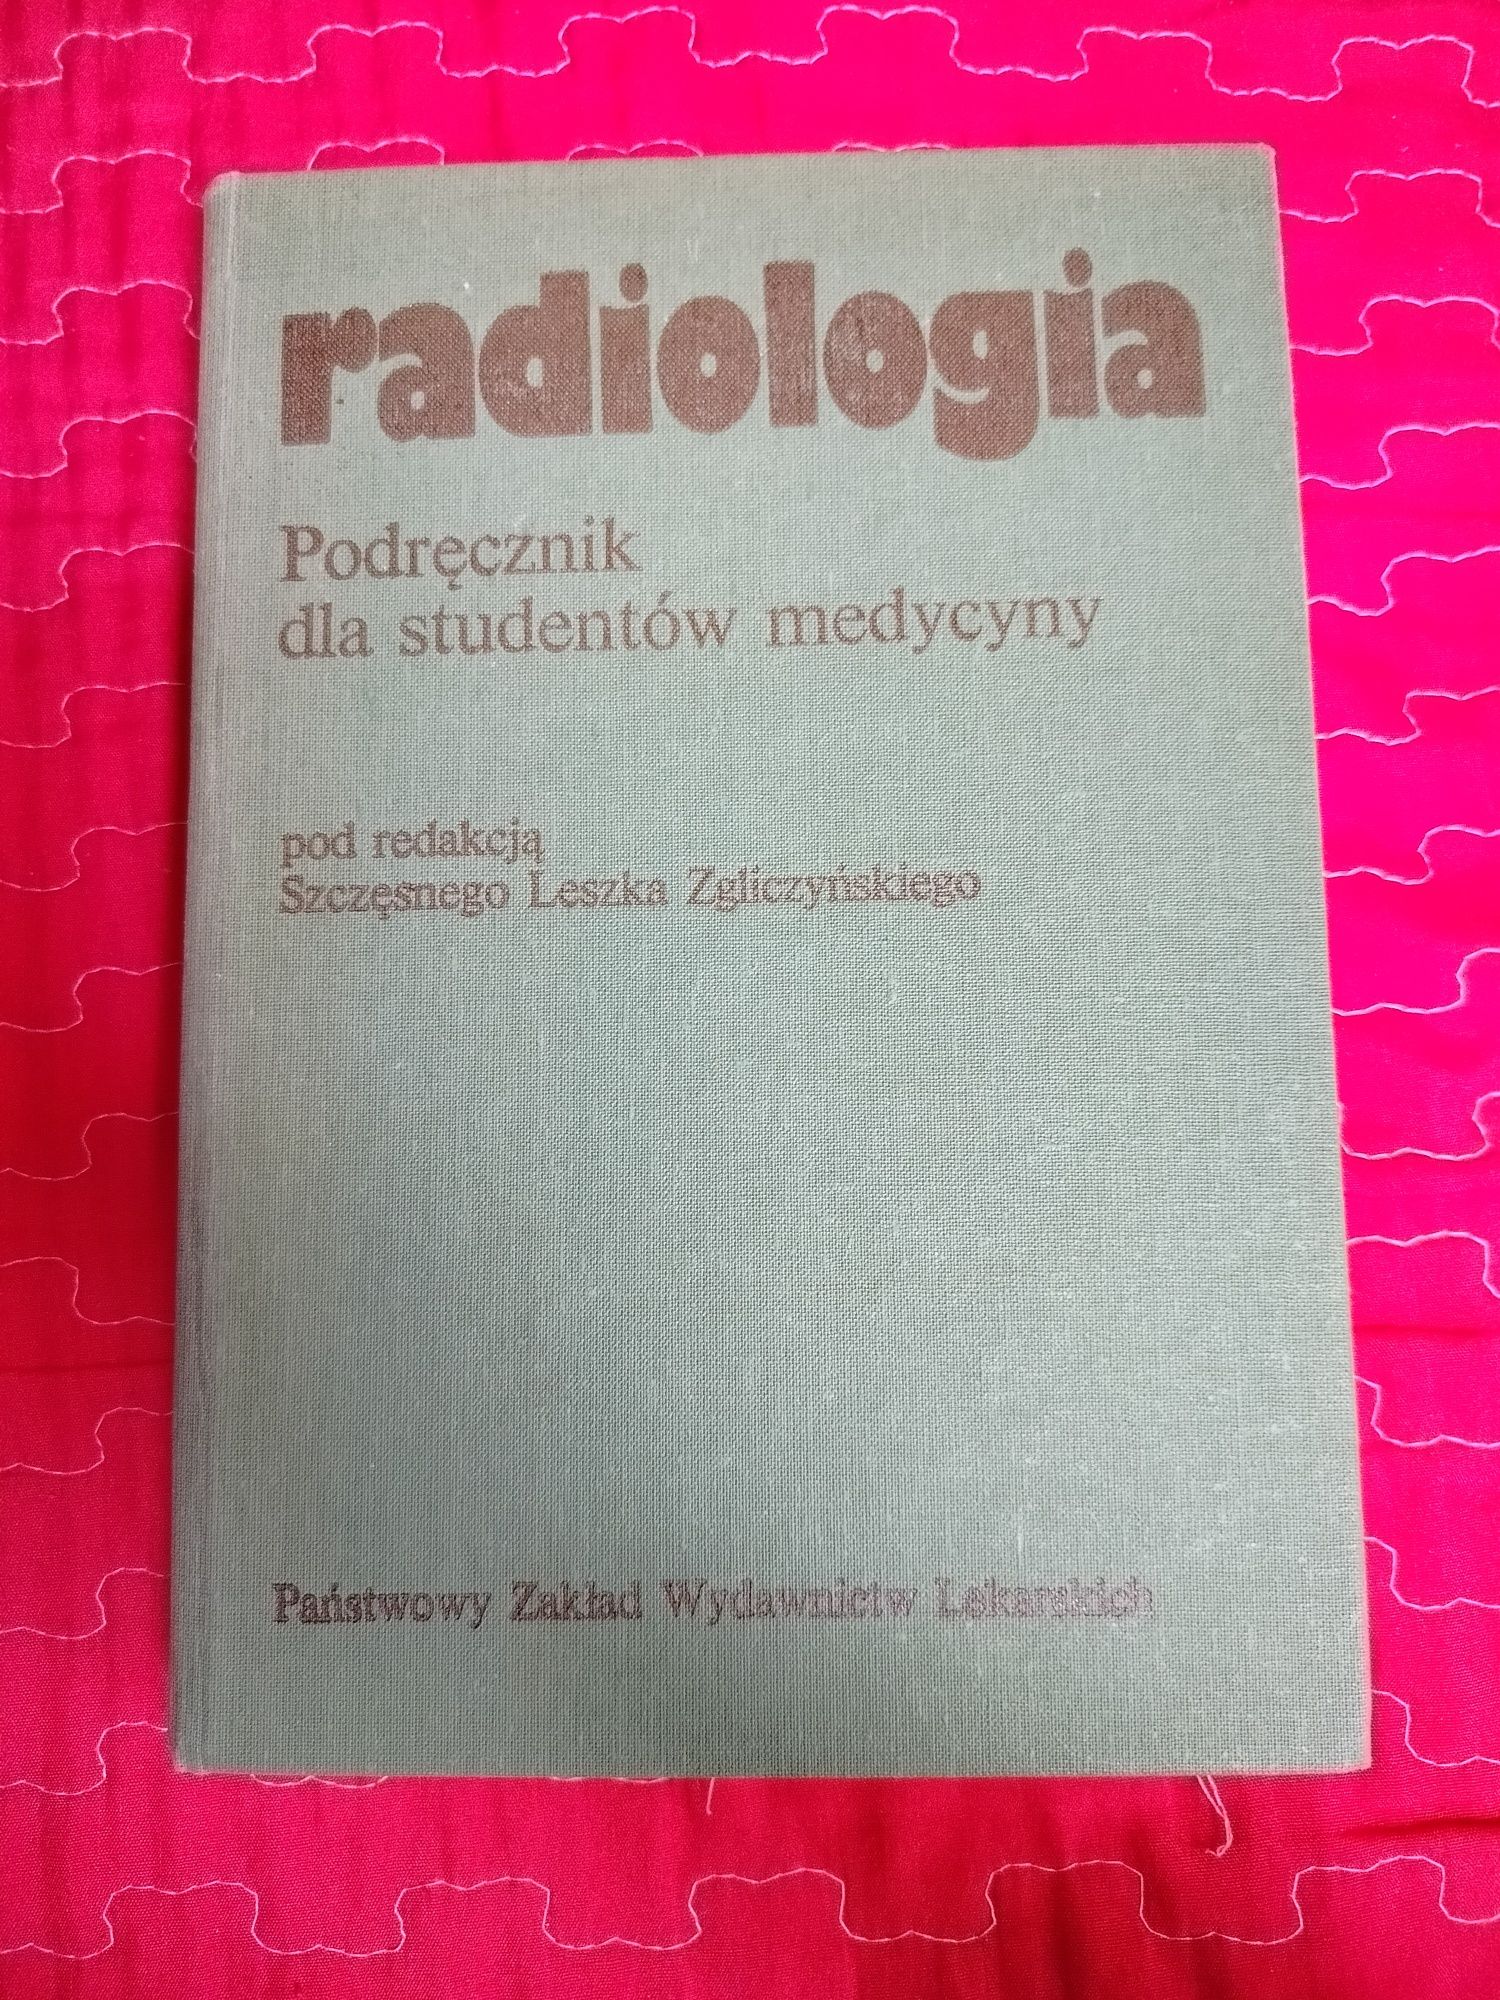 Radiologia, pod redakcją Szczęsnego Leszka Zgliczyńskiego